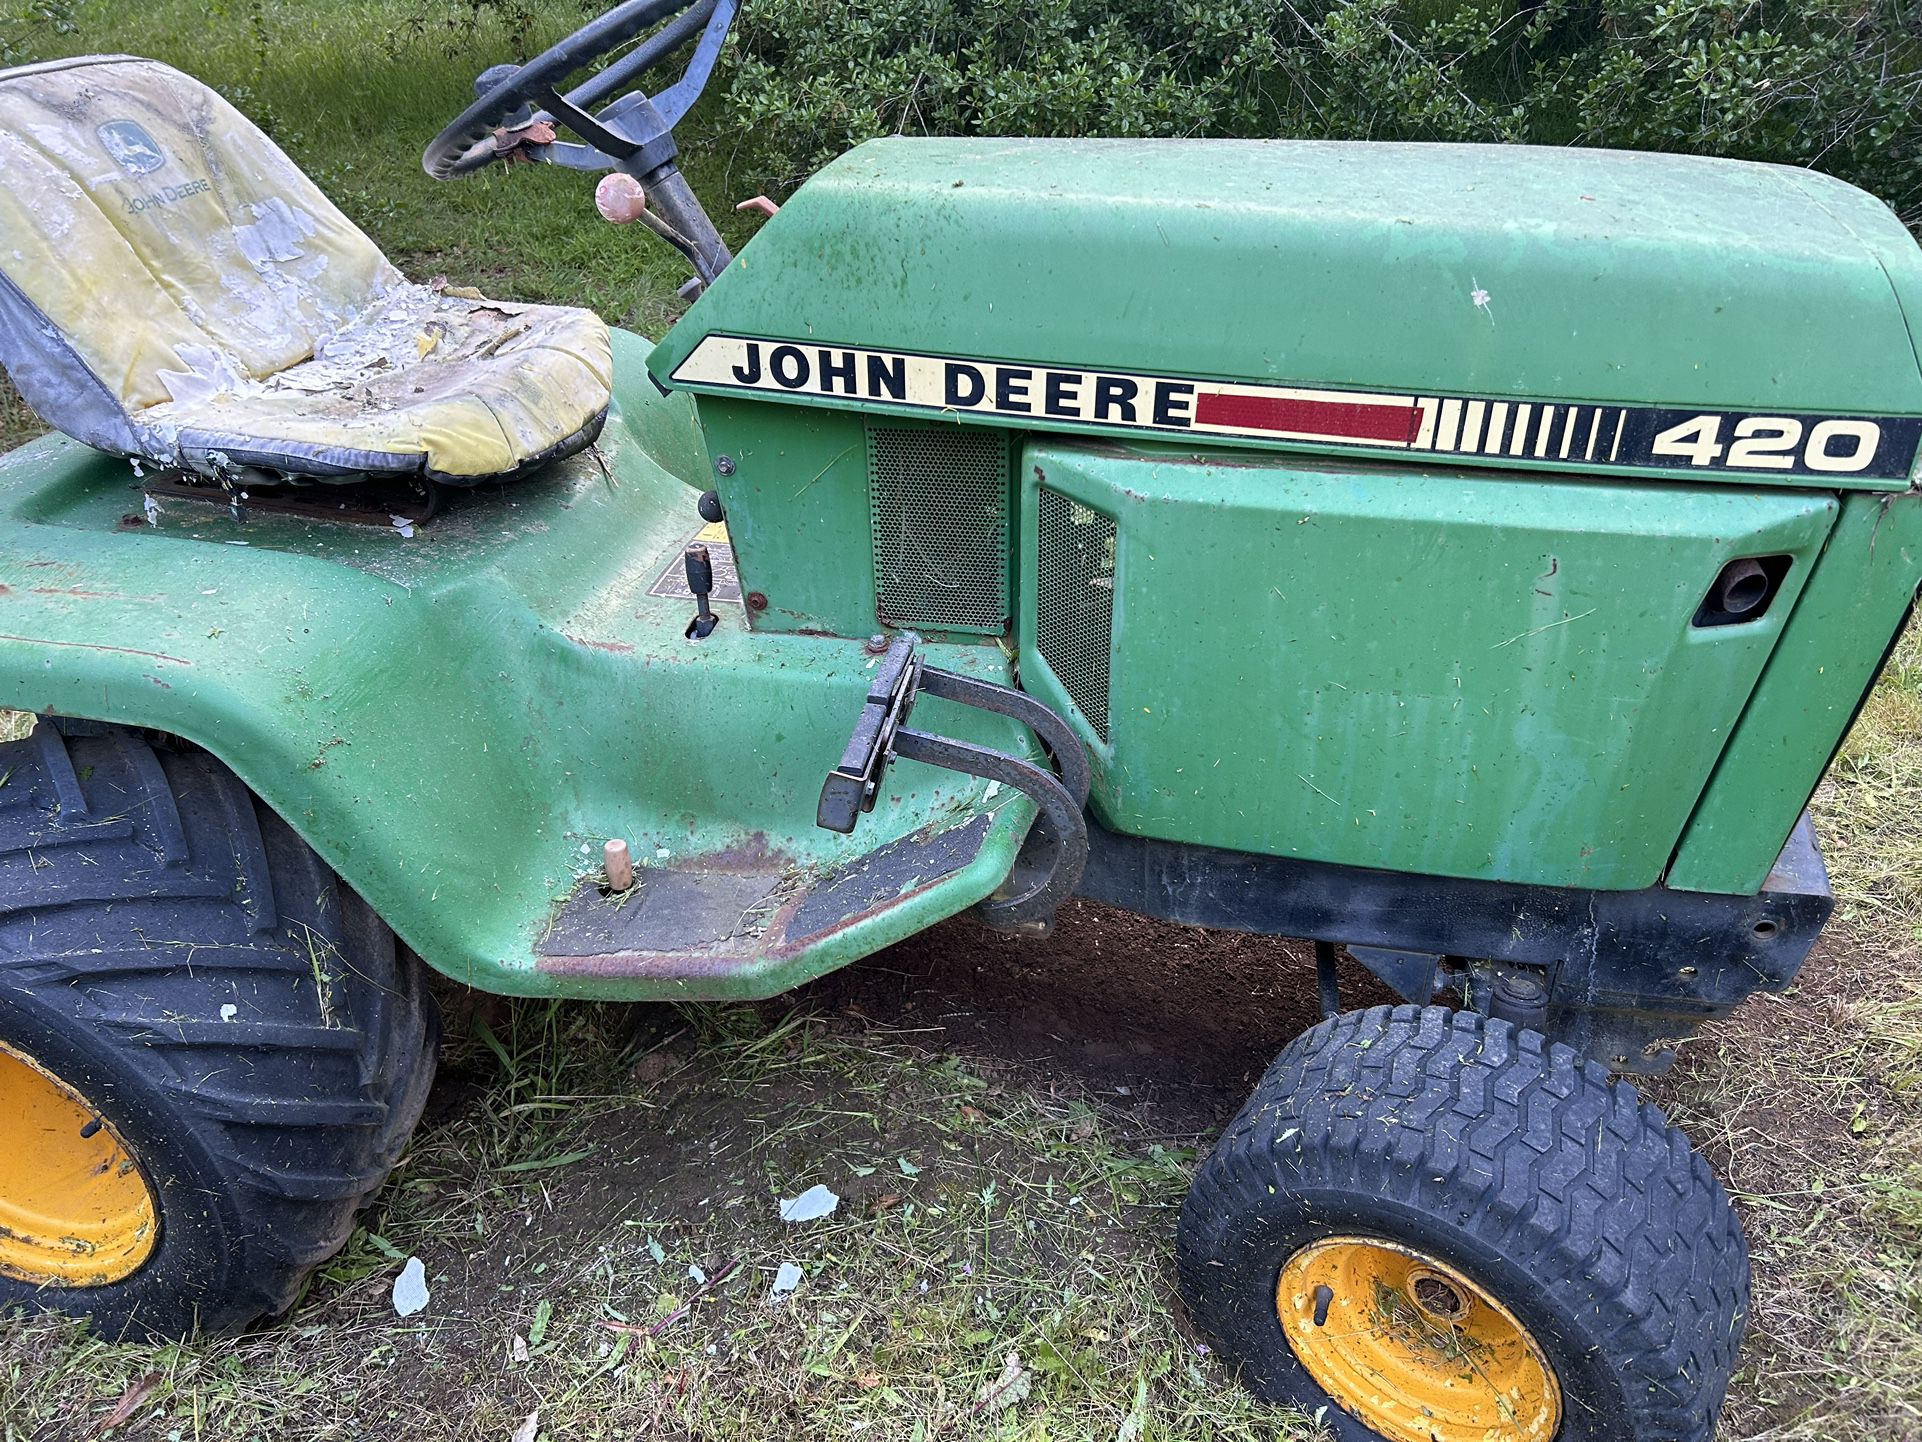 JOHN dEERe 🦌 420 Tractor From 80’